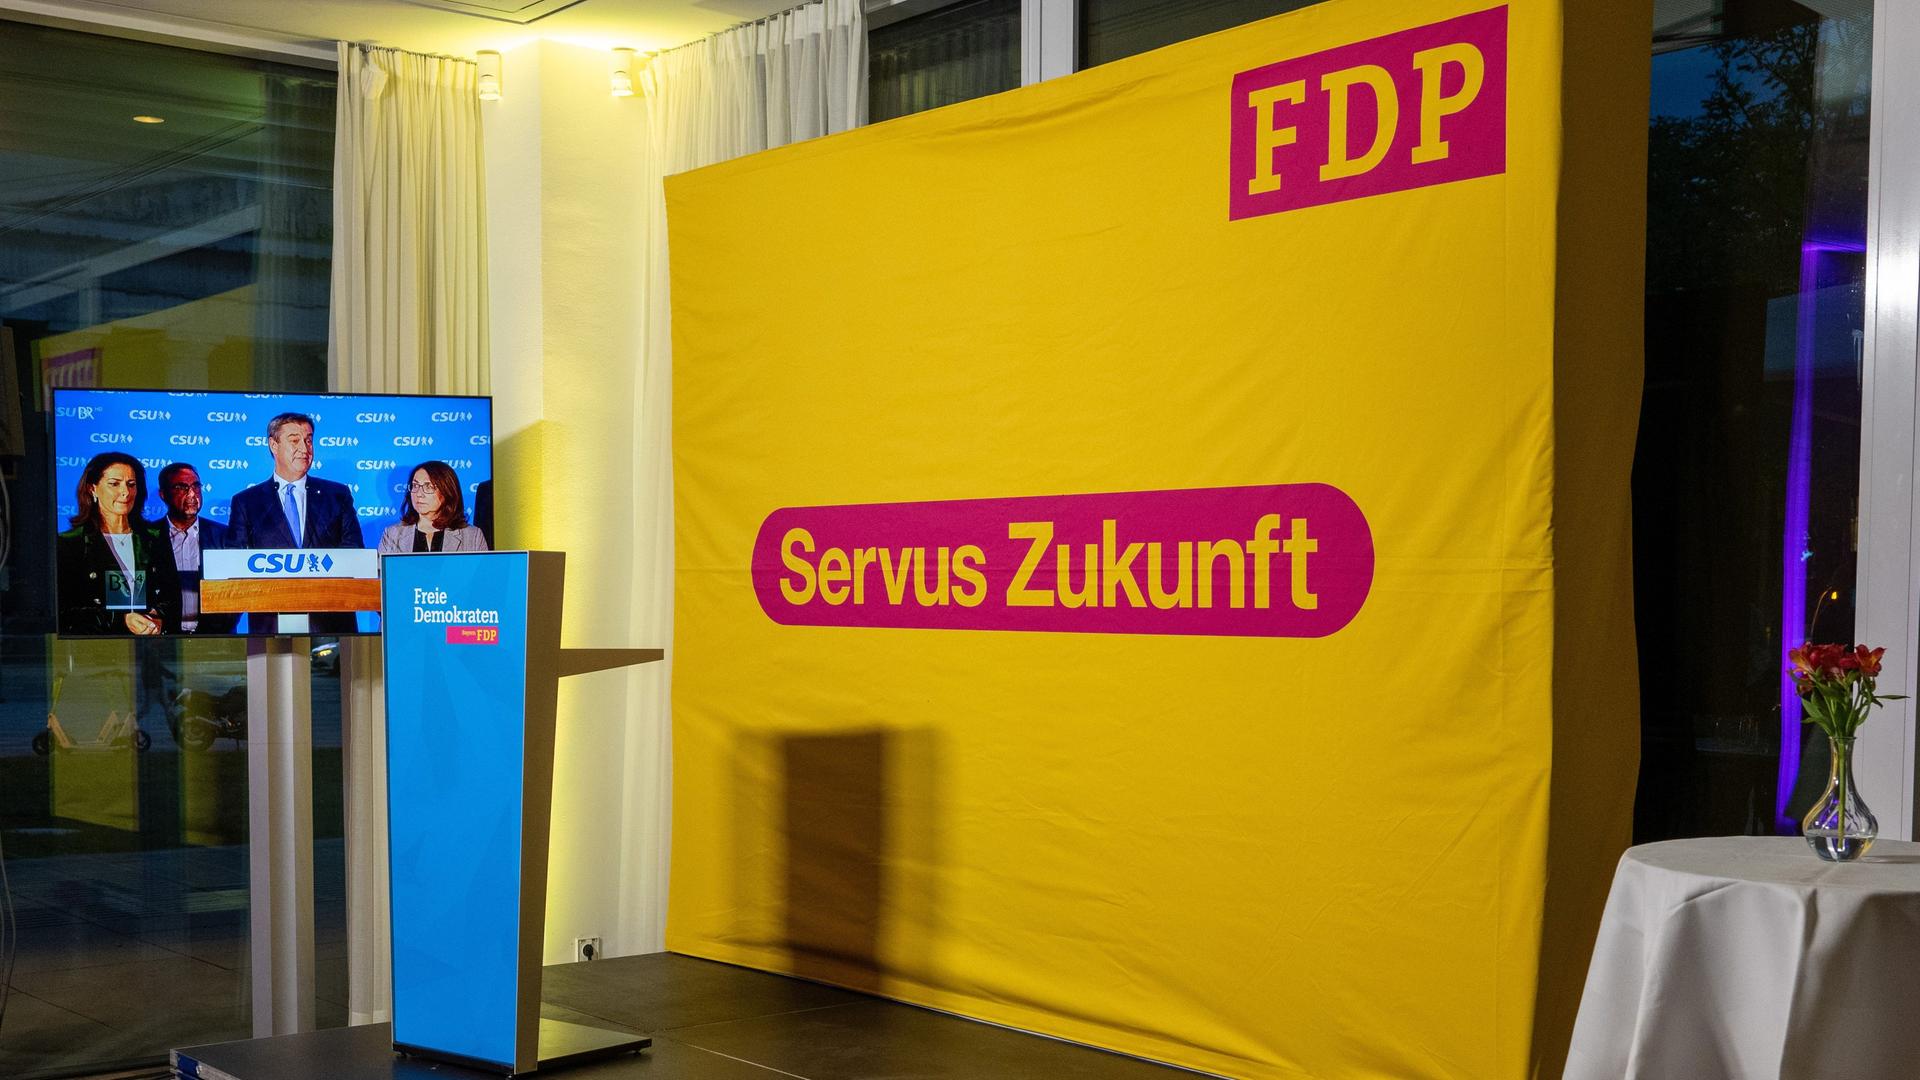 Markus Söder (CSU), Ministerpräsident von Bayern, ist bei bei der Wahlparty der FDP auf einem Bildschirm hinter leeren Stehtischen zu sehen. Auf einem Großplakat steht "Servus Zukunft - FDP"